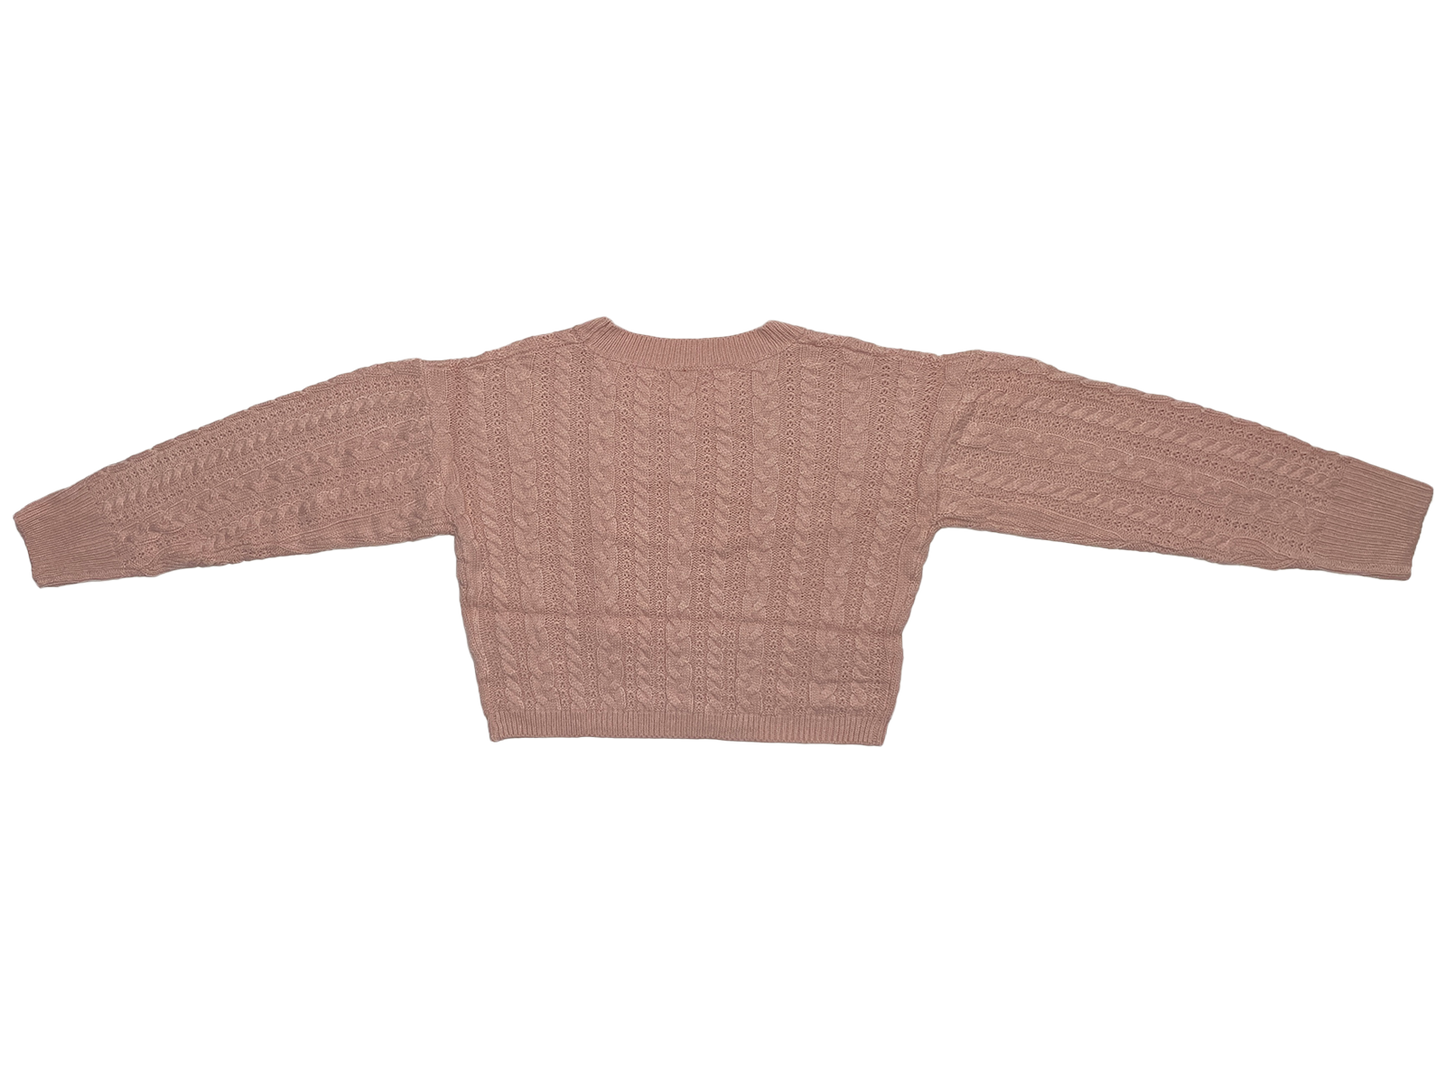 Bubblegum Knit Sweater